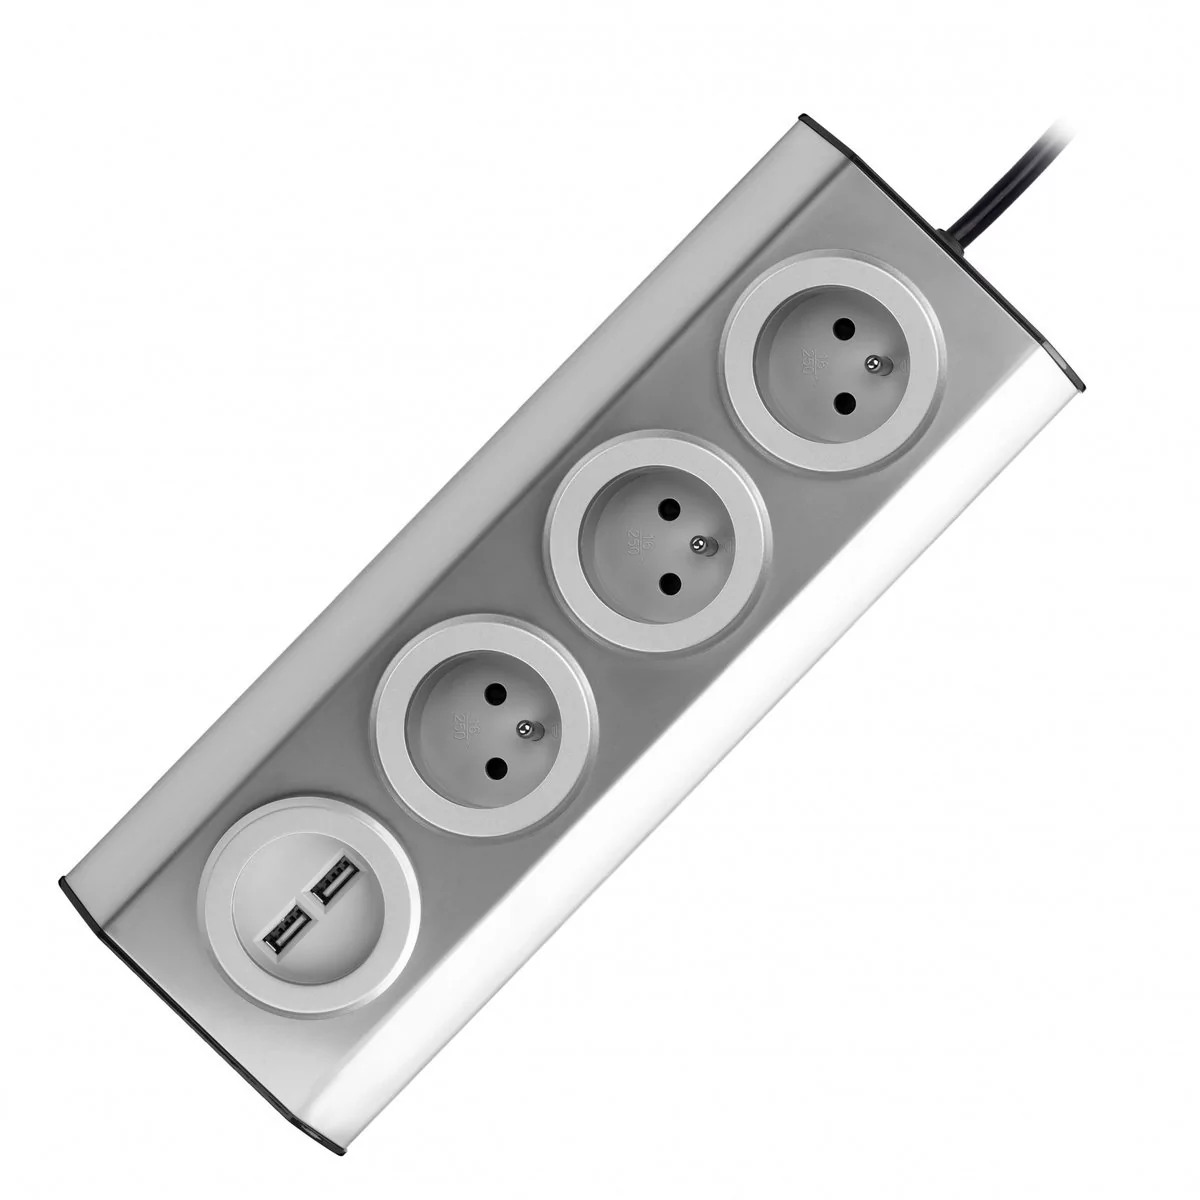 Orno Gniazdo meblowe kuchenne z ładowarką USB montowane na rzepy z przewodem 1,5m 3x2P+Z 2xUSB INOX z przewodem 1,5m FS-4